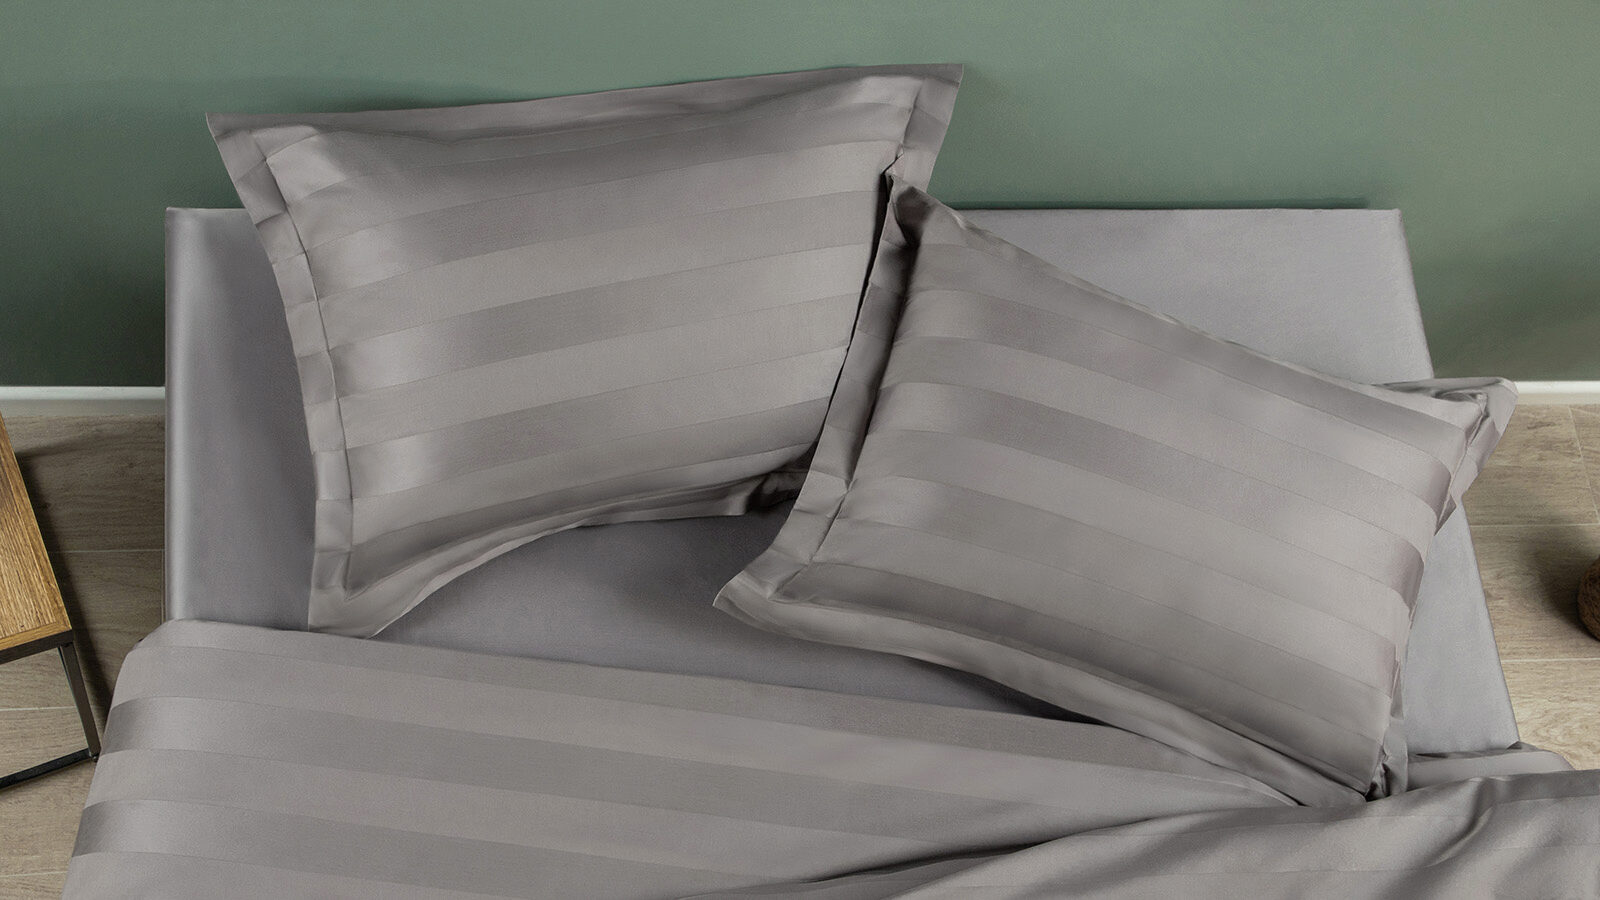 Комплект постельного белья Stripe, цвет: Антрацит комплект огранки топаза из 3 камней